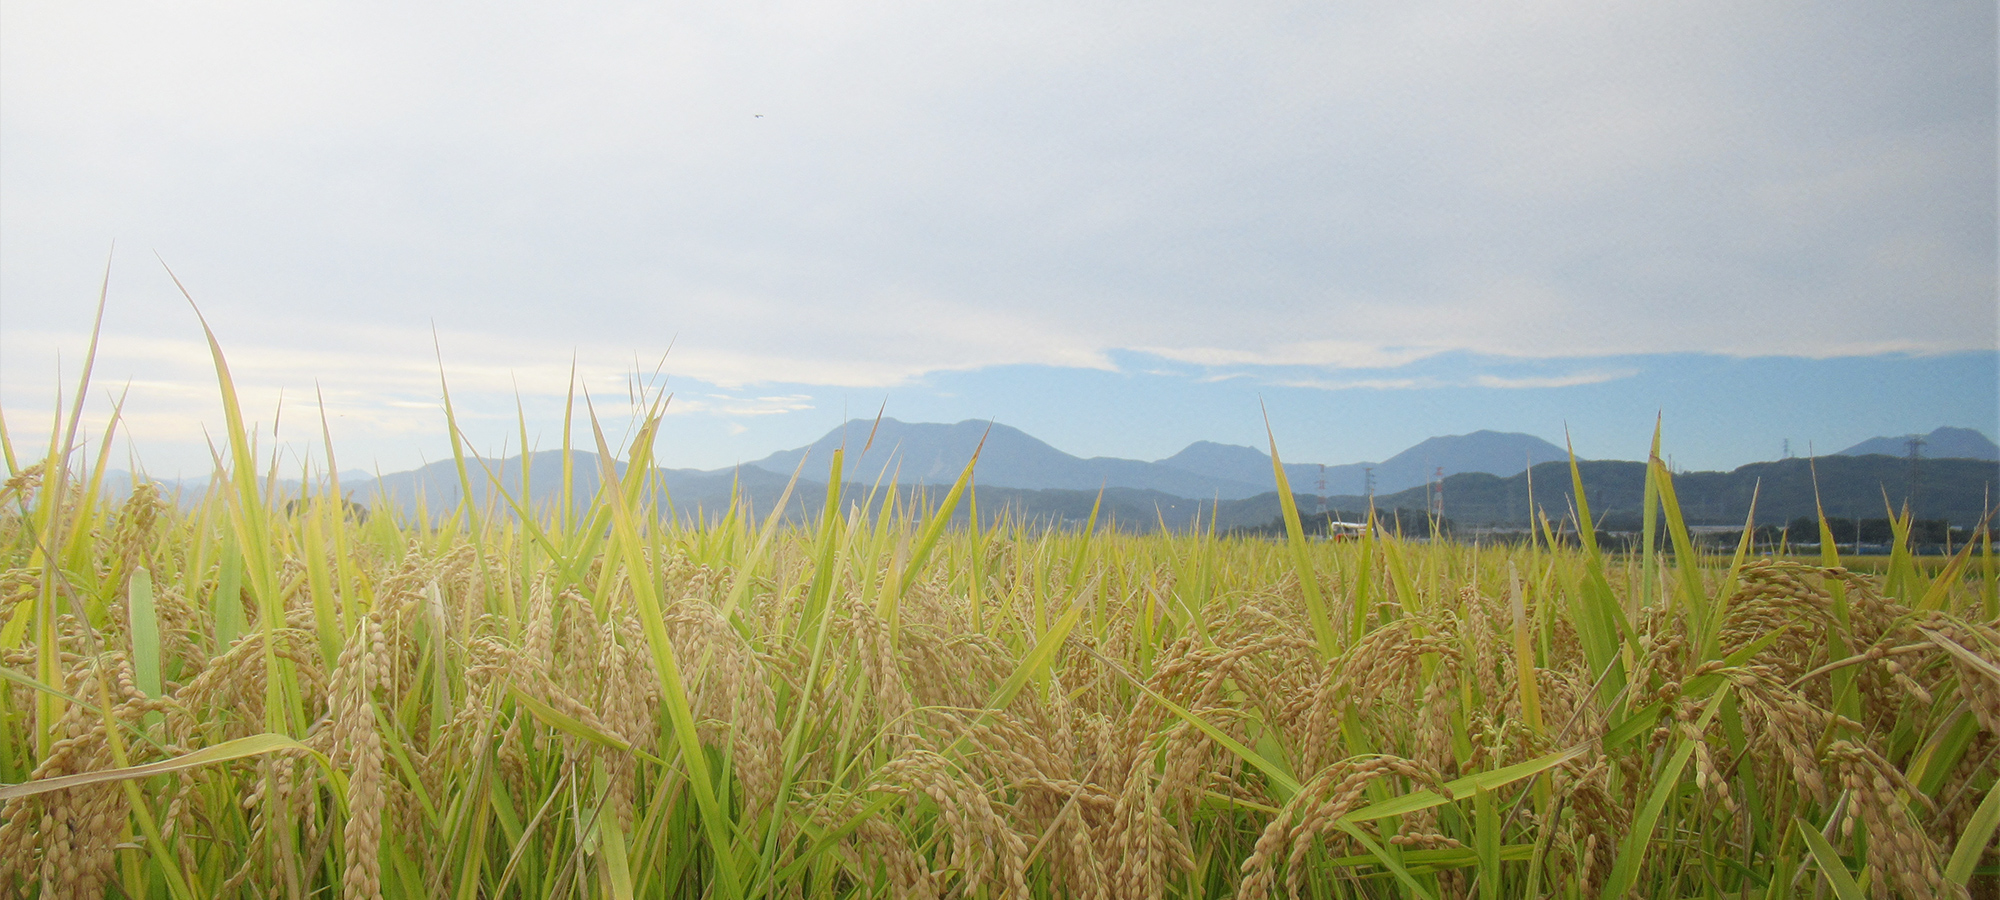 思わず笑顔になるようなお米を　”桜沢”の大自然の中で心を込めてお作りします